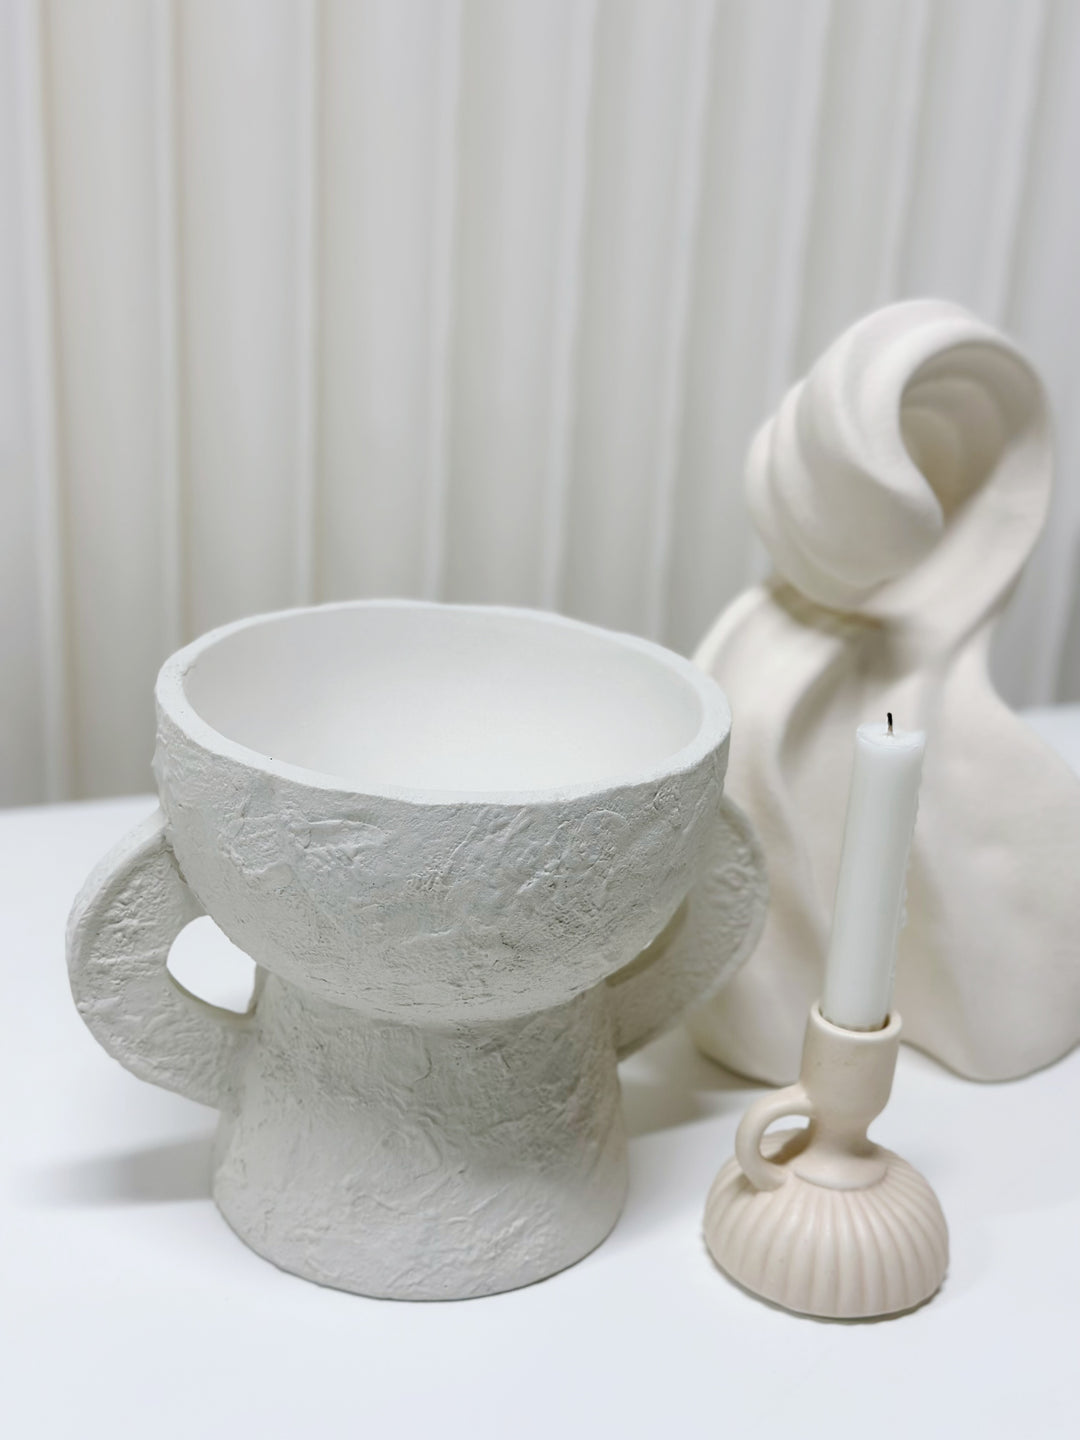 Artisanal Edge Porcelain Bowl on Pedestal